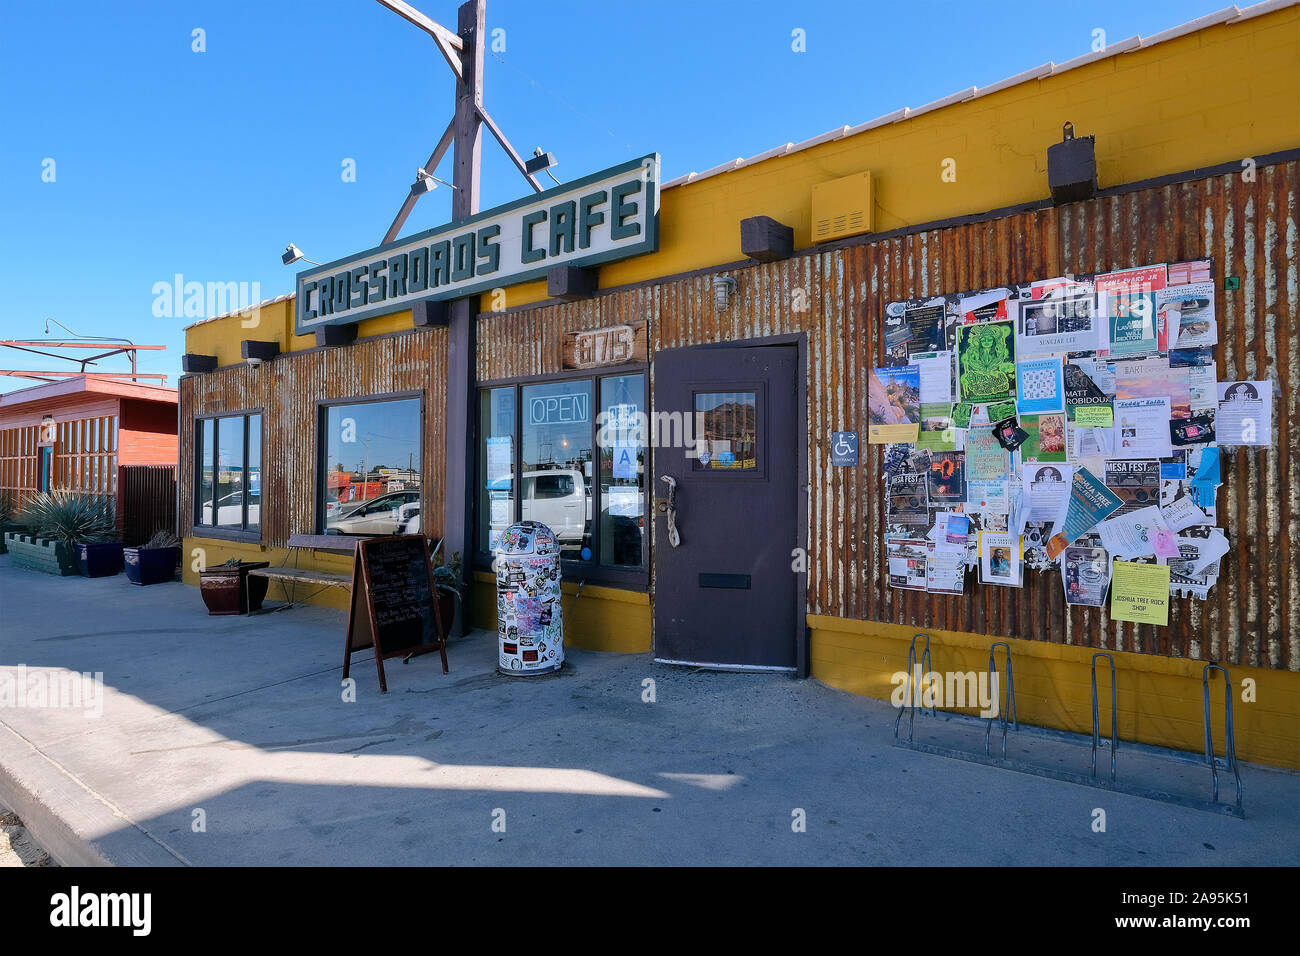 Crocevia Cafe di Yucca Valley, Joshua Tree, CALIFORNIA, STATI UNITI D'AMERICA Foto Stock